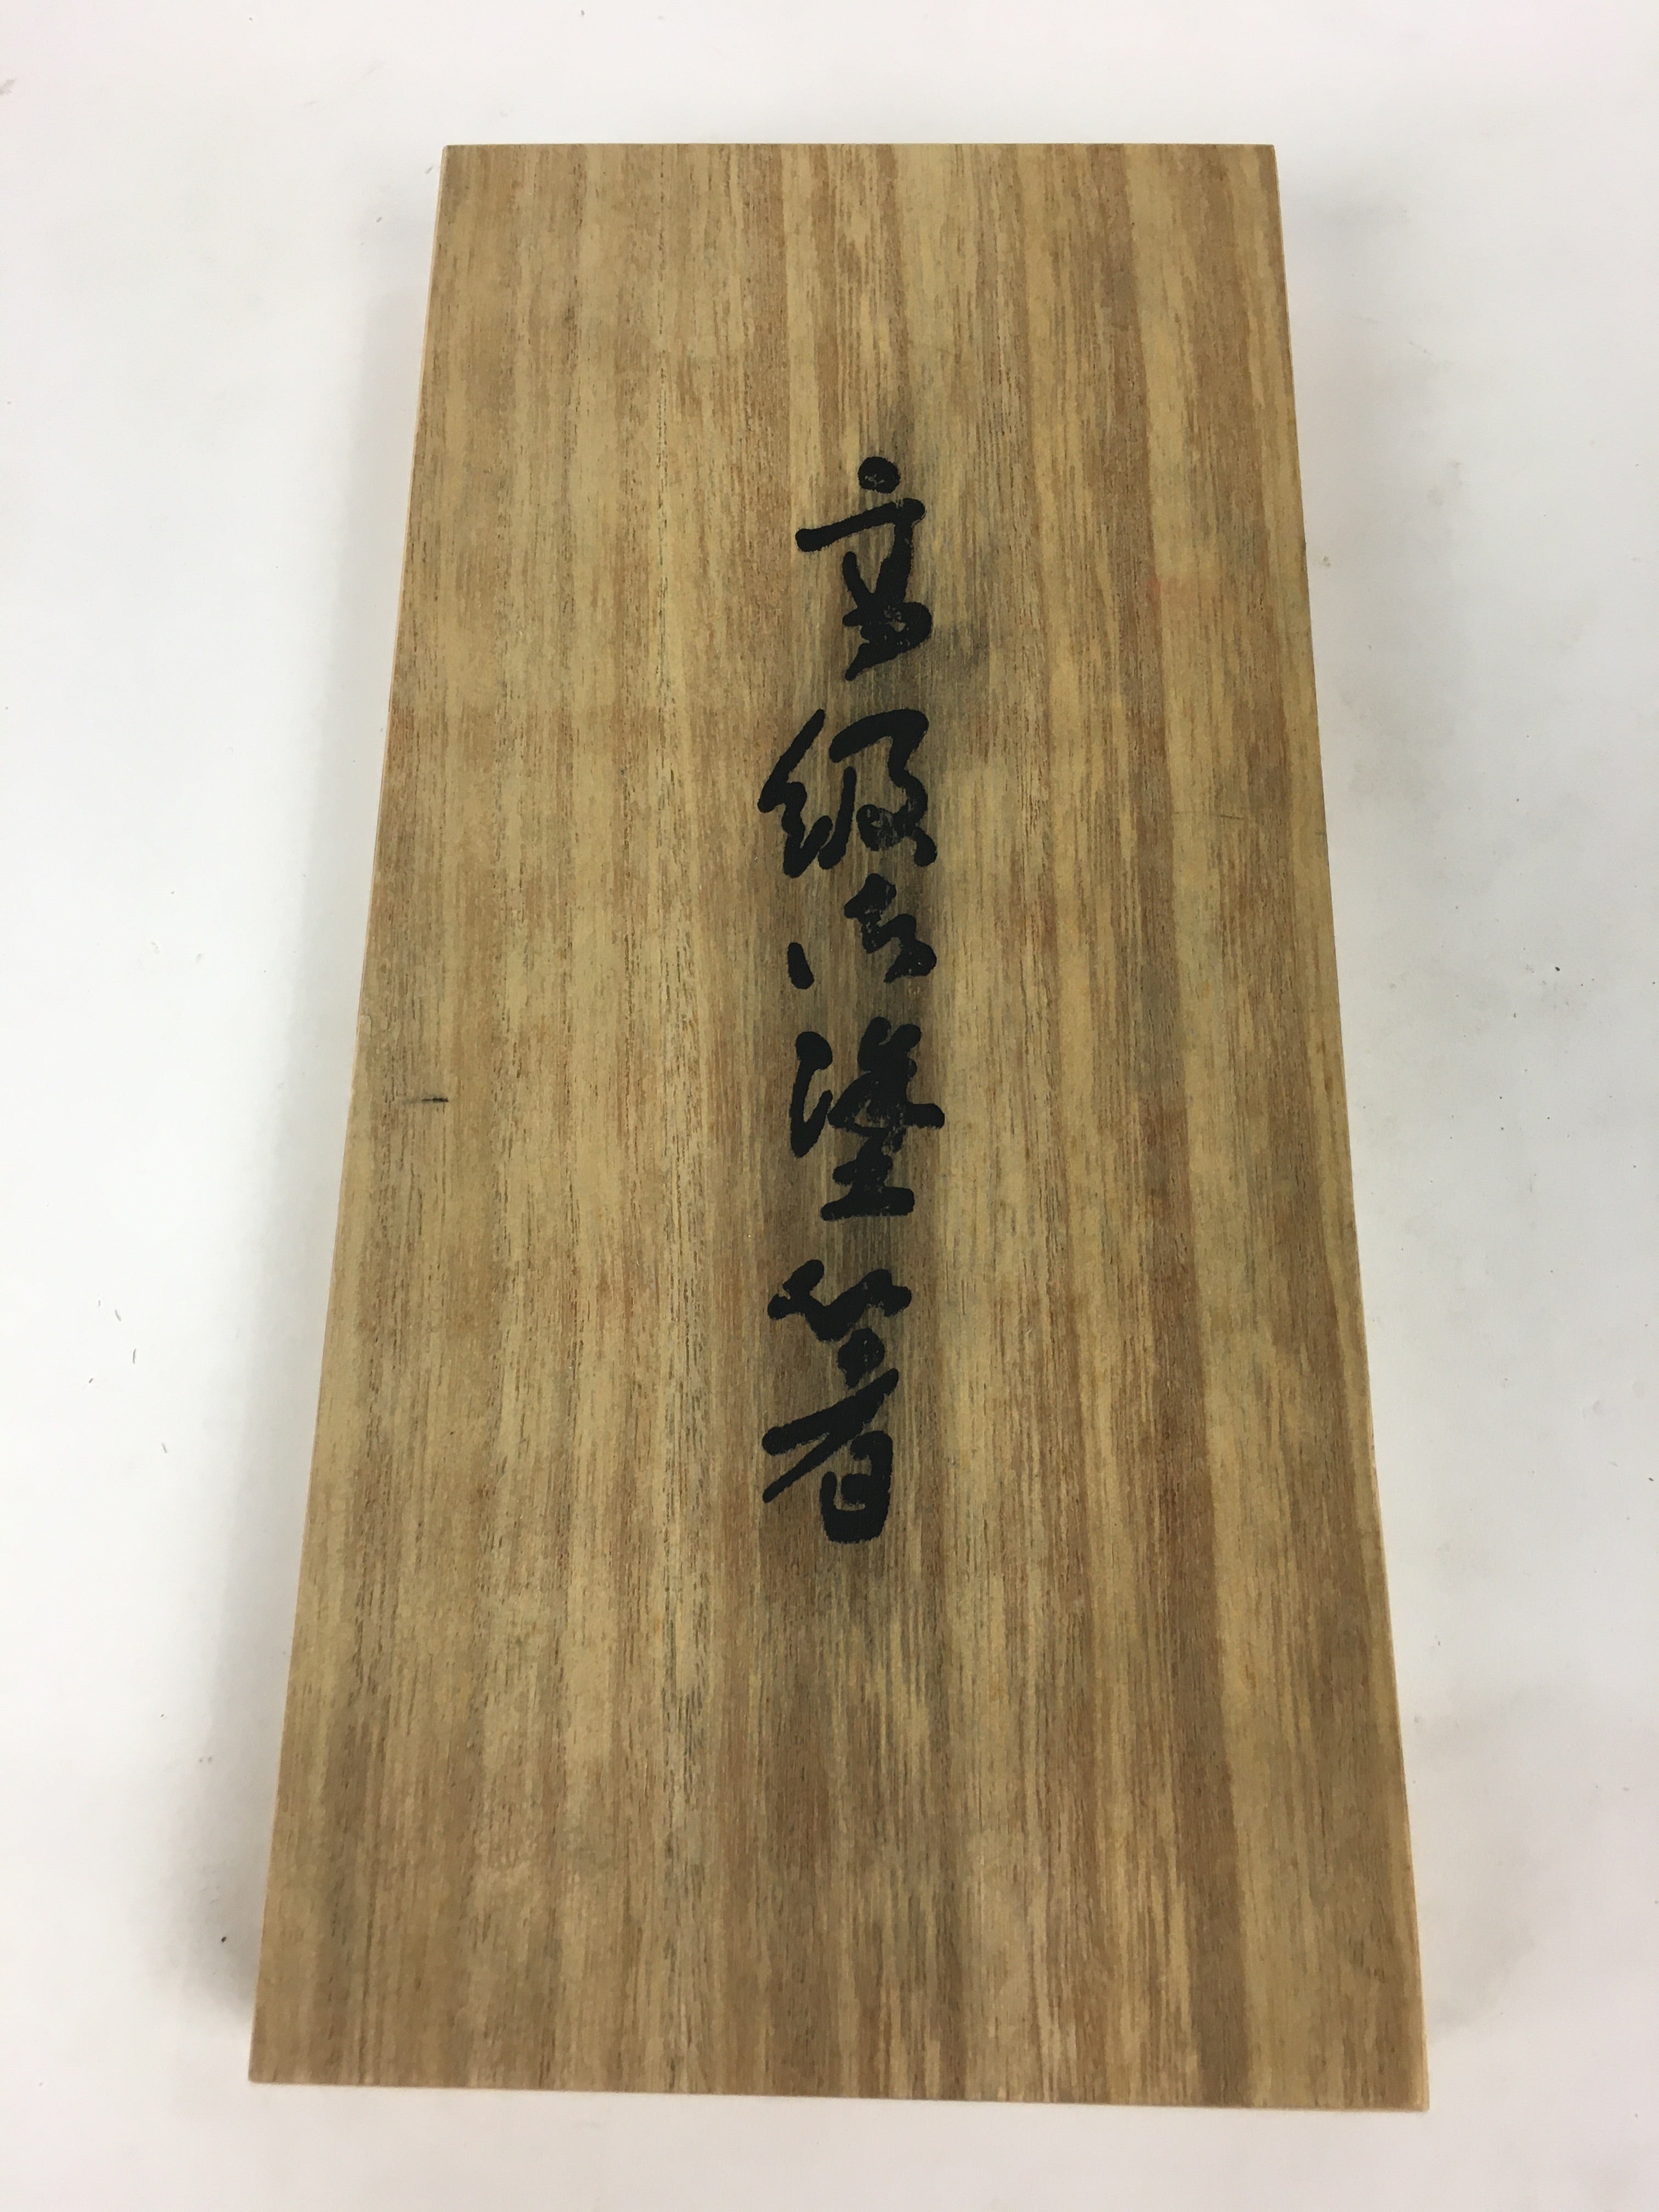 Japanese Wooden Storage Box Vtg Pottery Hako Inside 10.3x24.5x2cm WB902